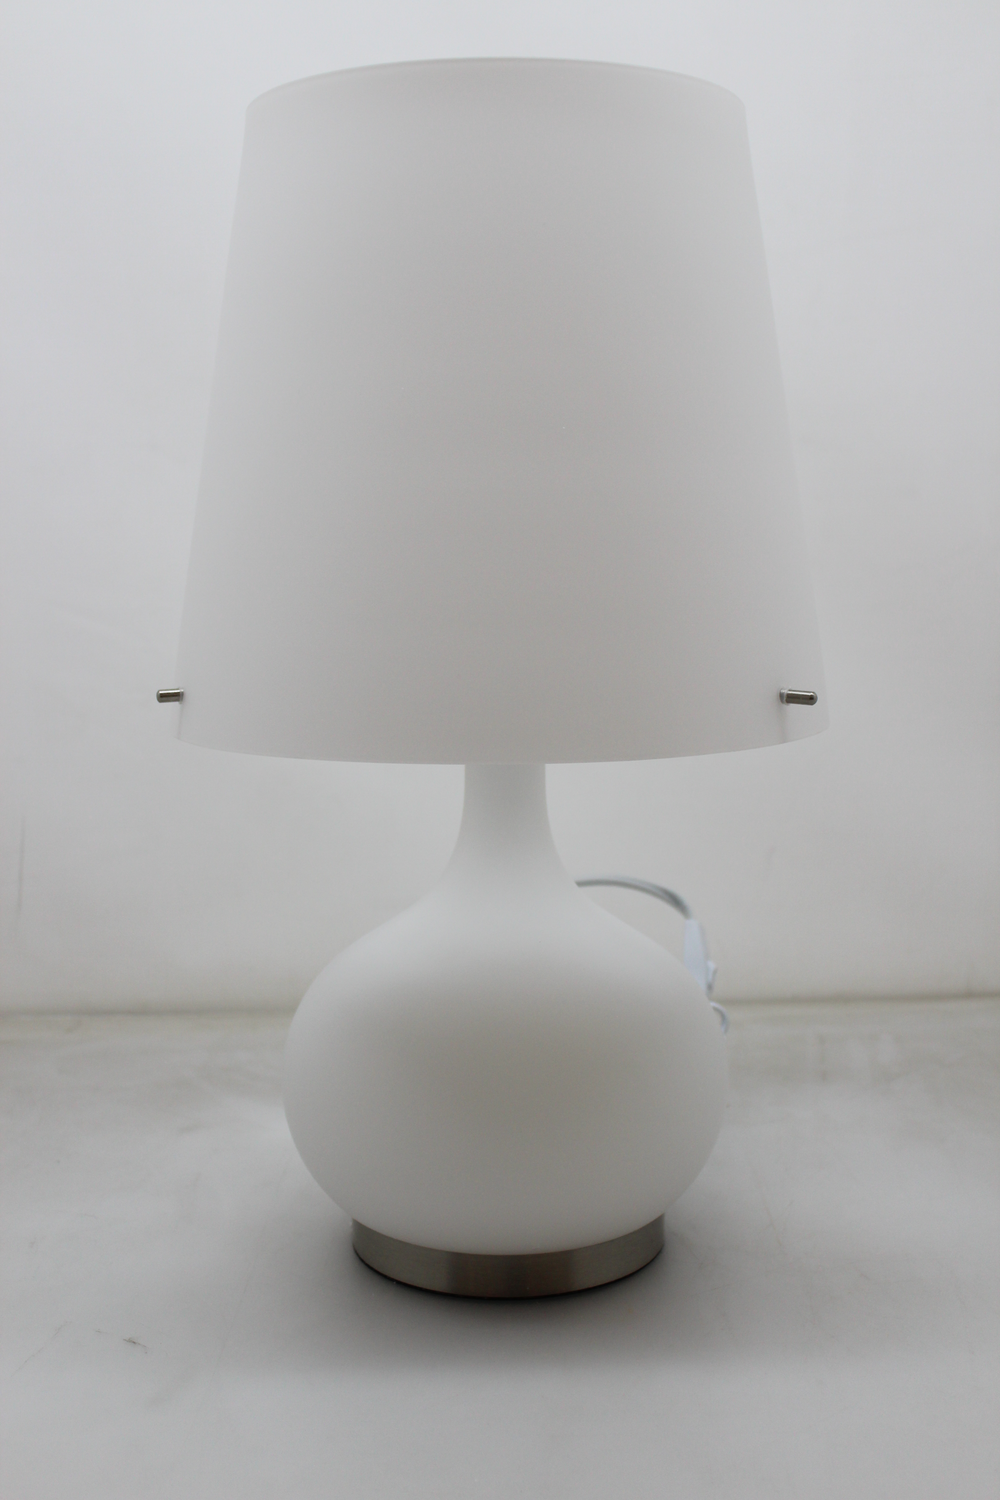 Fabas Luce Tischleuchte Ade Tischlampe Tischlicht Leuchte Lampe Licht weiß 58 cm